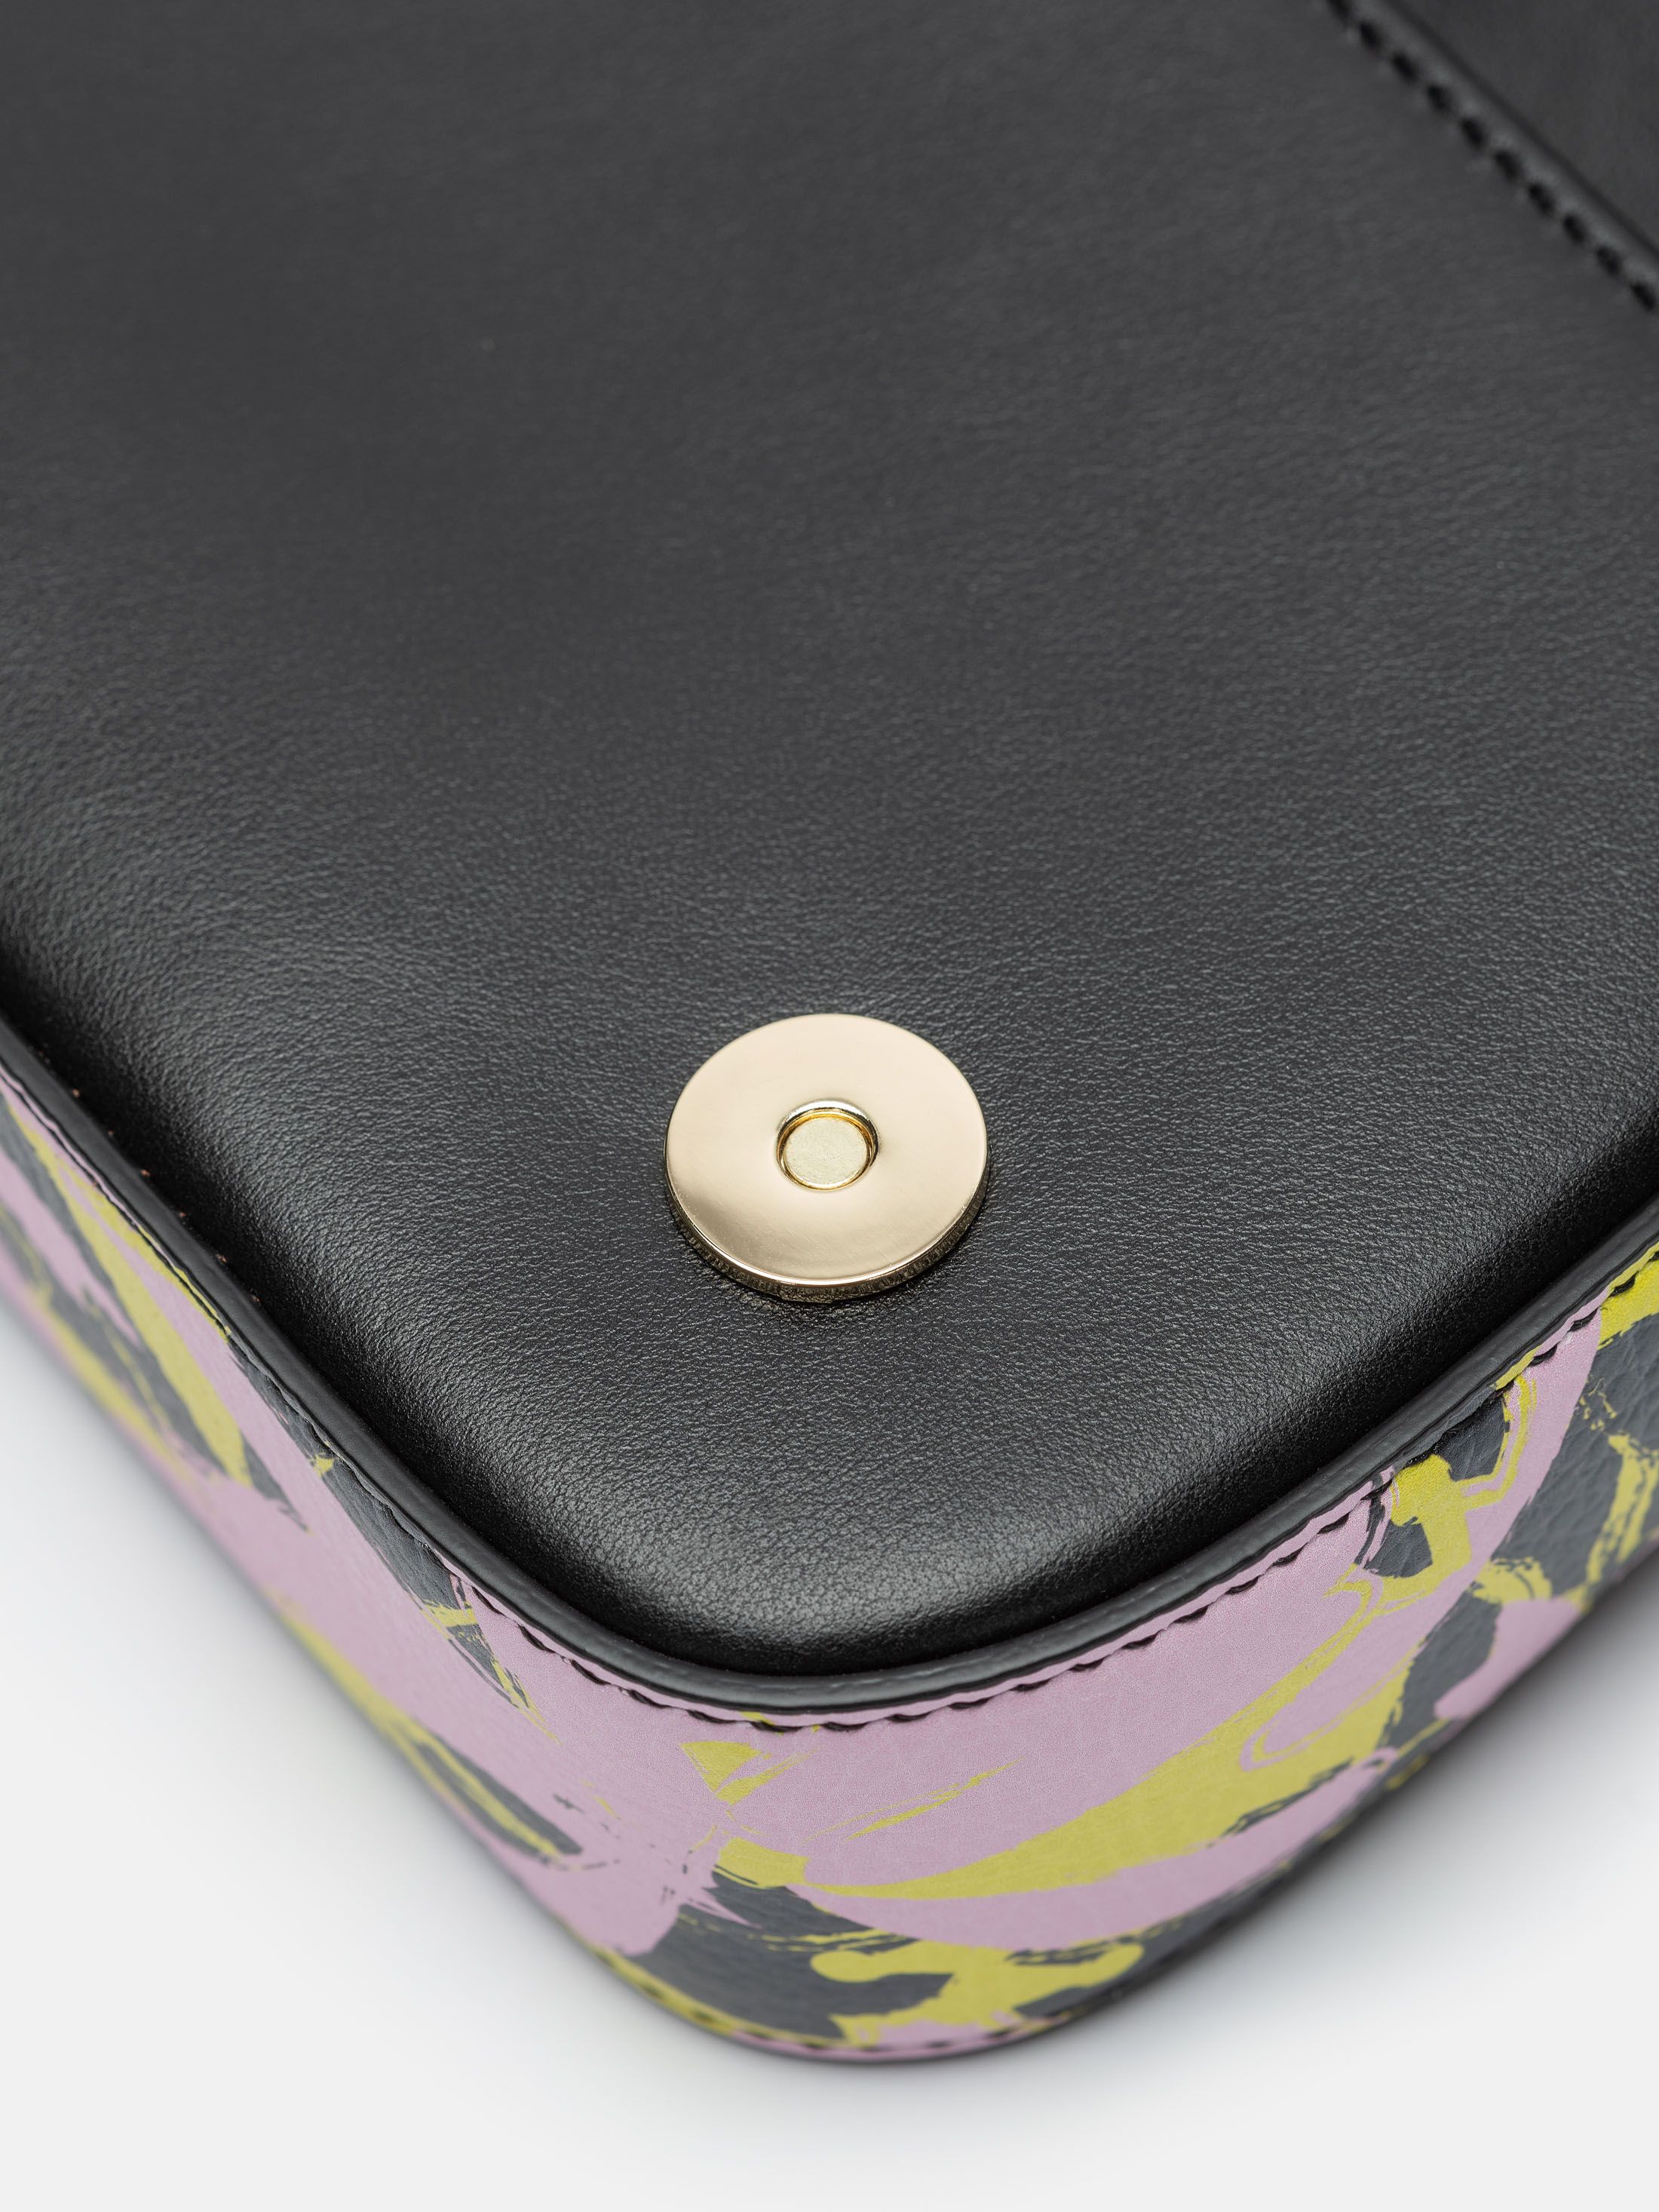 Designa en egen foldover-väska, handtillverkad av äkta Nappaläder